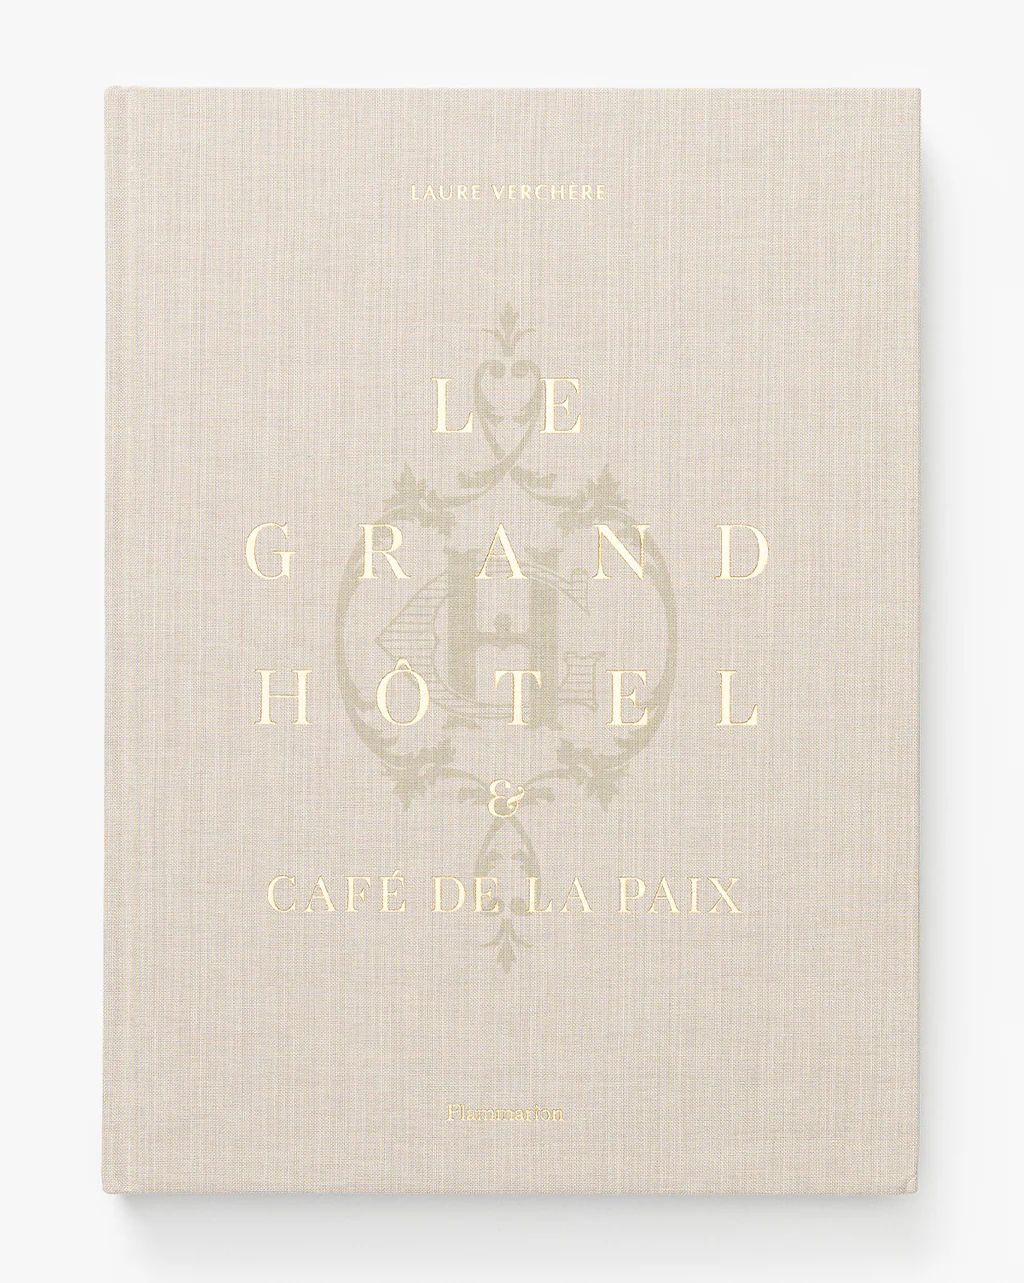 Le Grand Hôtel & Café de la Paix | McGee & Co.